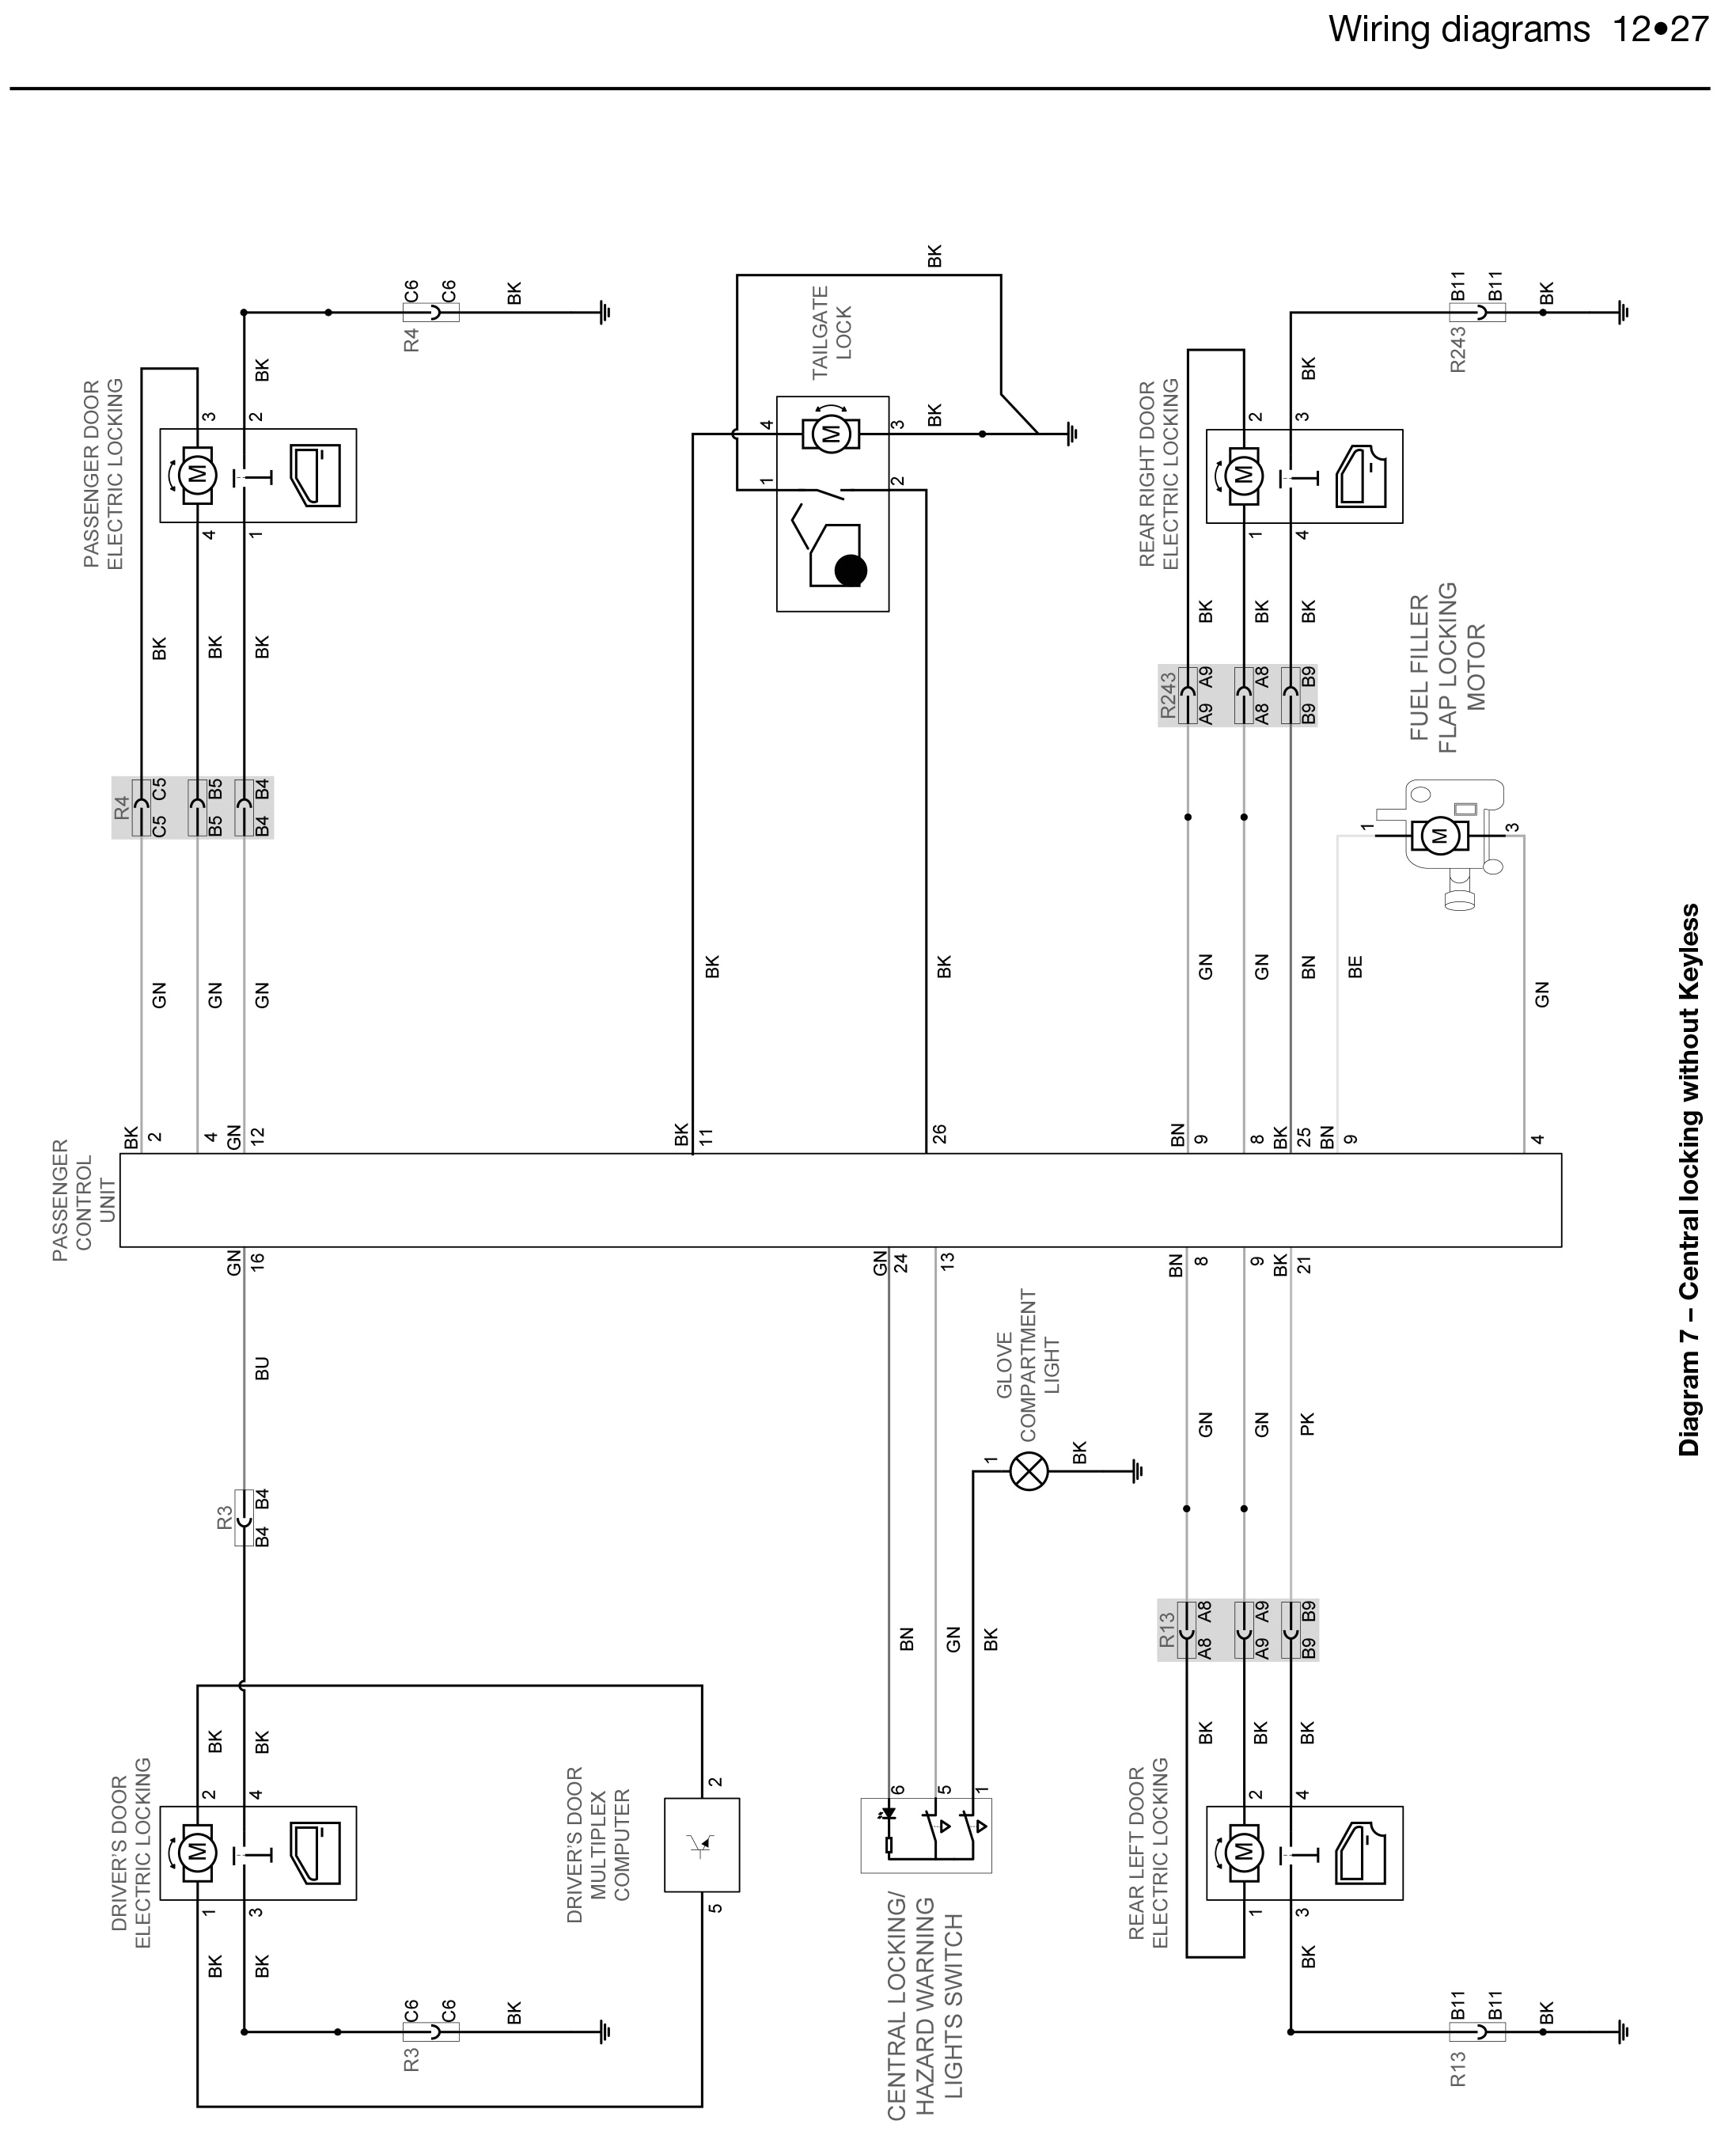 renault megane wiring diagram albertasafety orgrenault megane wiring diagram pdf library throughout